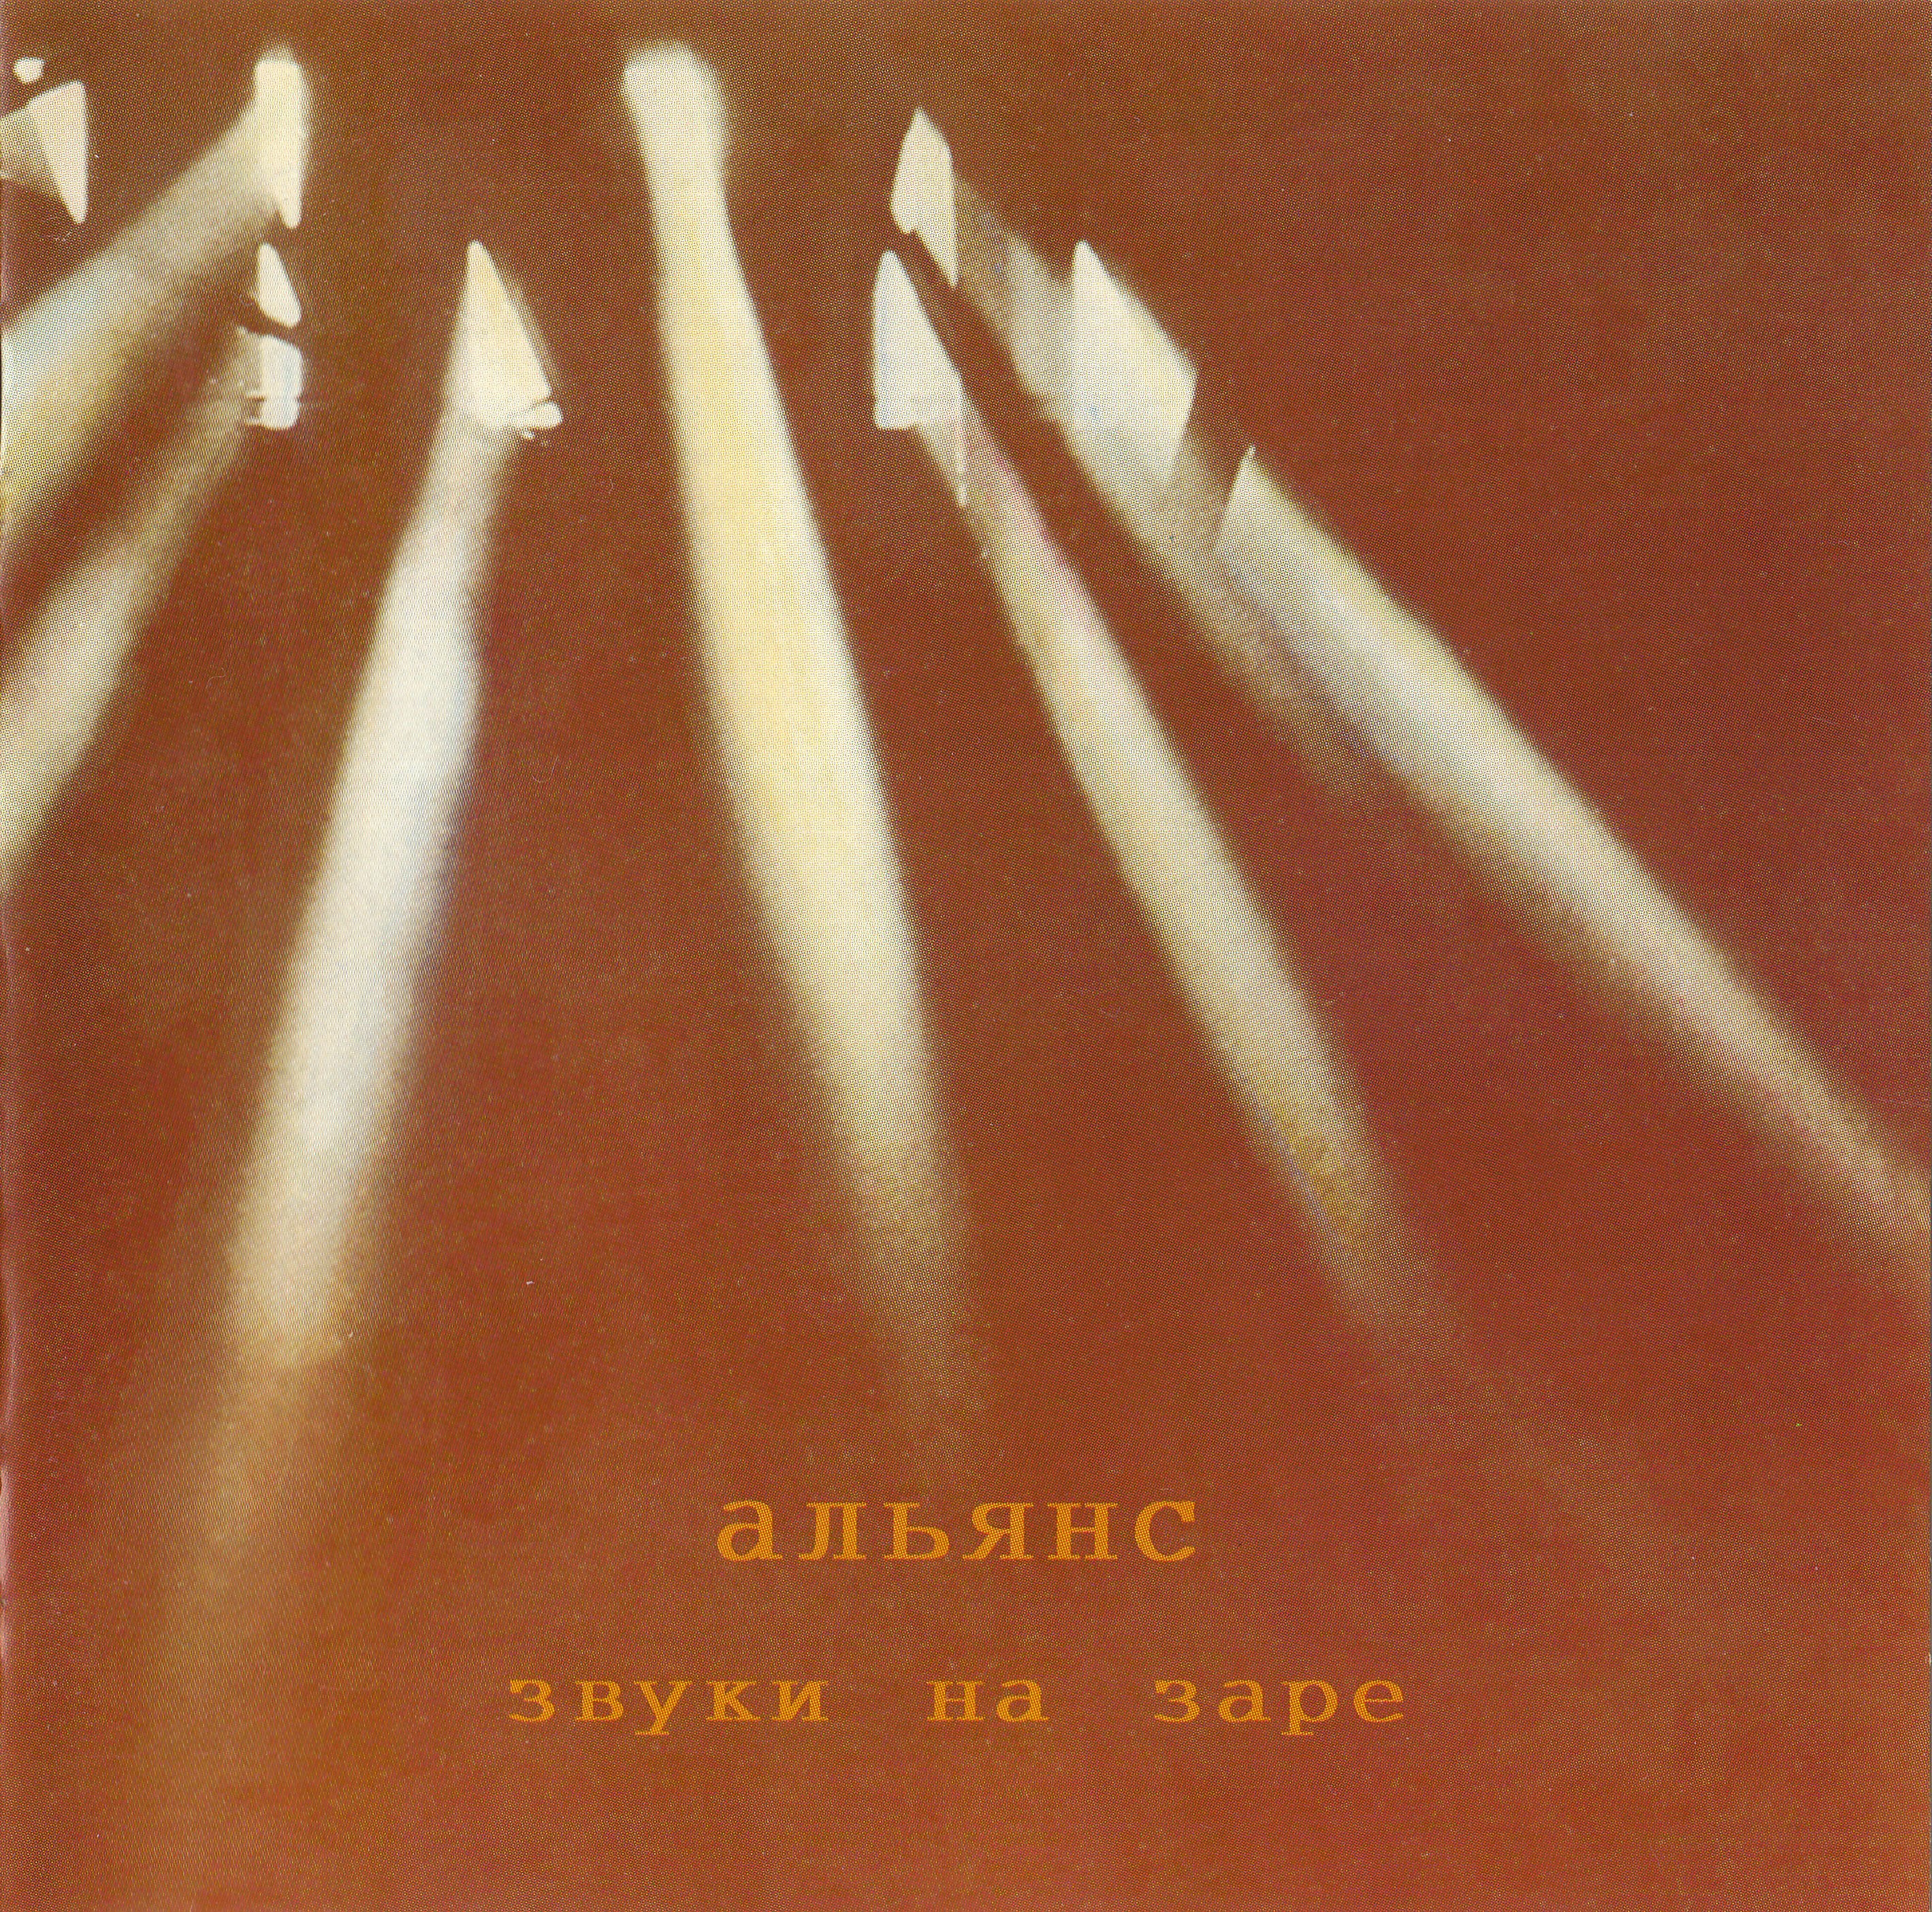 Группа альянс песни на заре. Альянс на заре 87. Альянс 1987 обложка. Группа Альянс «Альянс-87»/«дайте огня». Альянс звуки на заре.